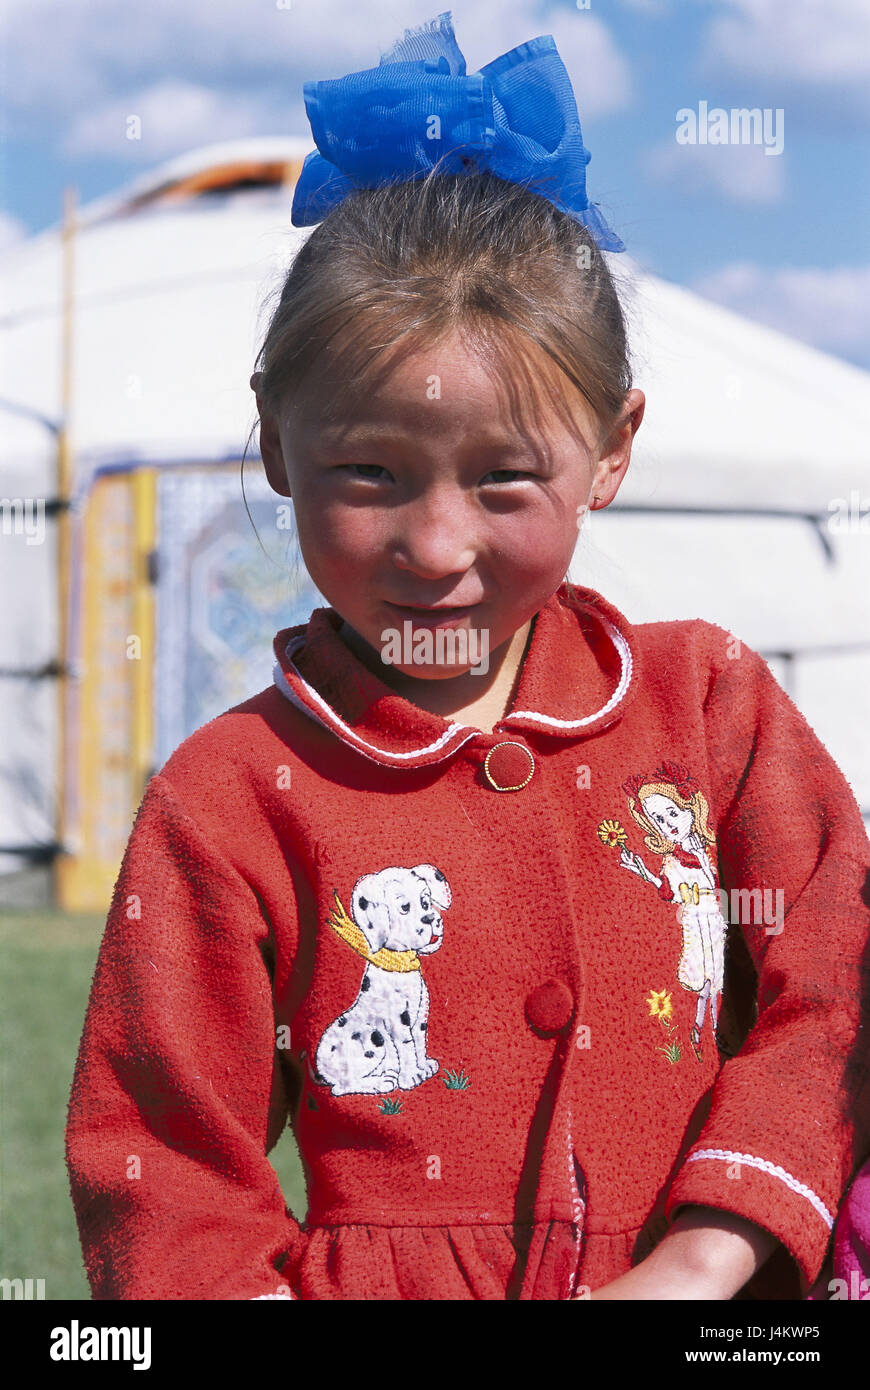 Mongolei, Provinz Övörhangay, Mädchen, Lächeln, Porträt keine Modellfreigabe Zentralasien, Kind, 5-10 Jahre, einheimische, Mongolen, anzeigen Kamera, dunkelhaarige, Natürlichkeit, Kindheit, draußen Stockfoto